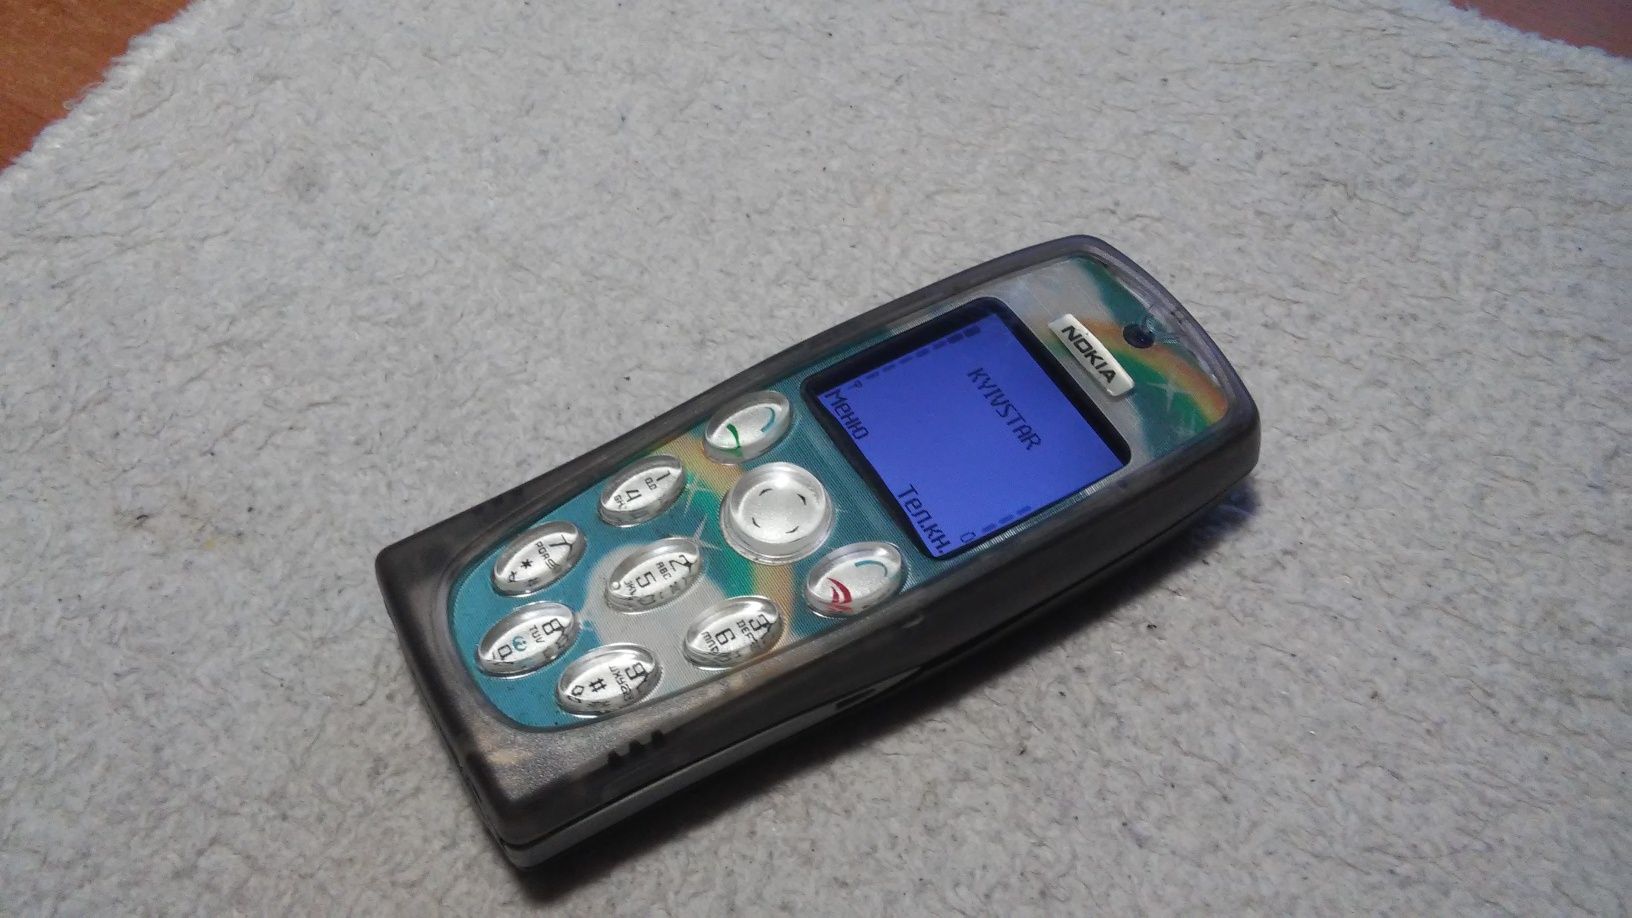 Nokia 3200 Original